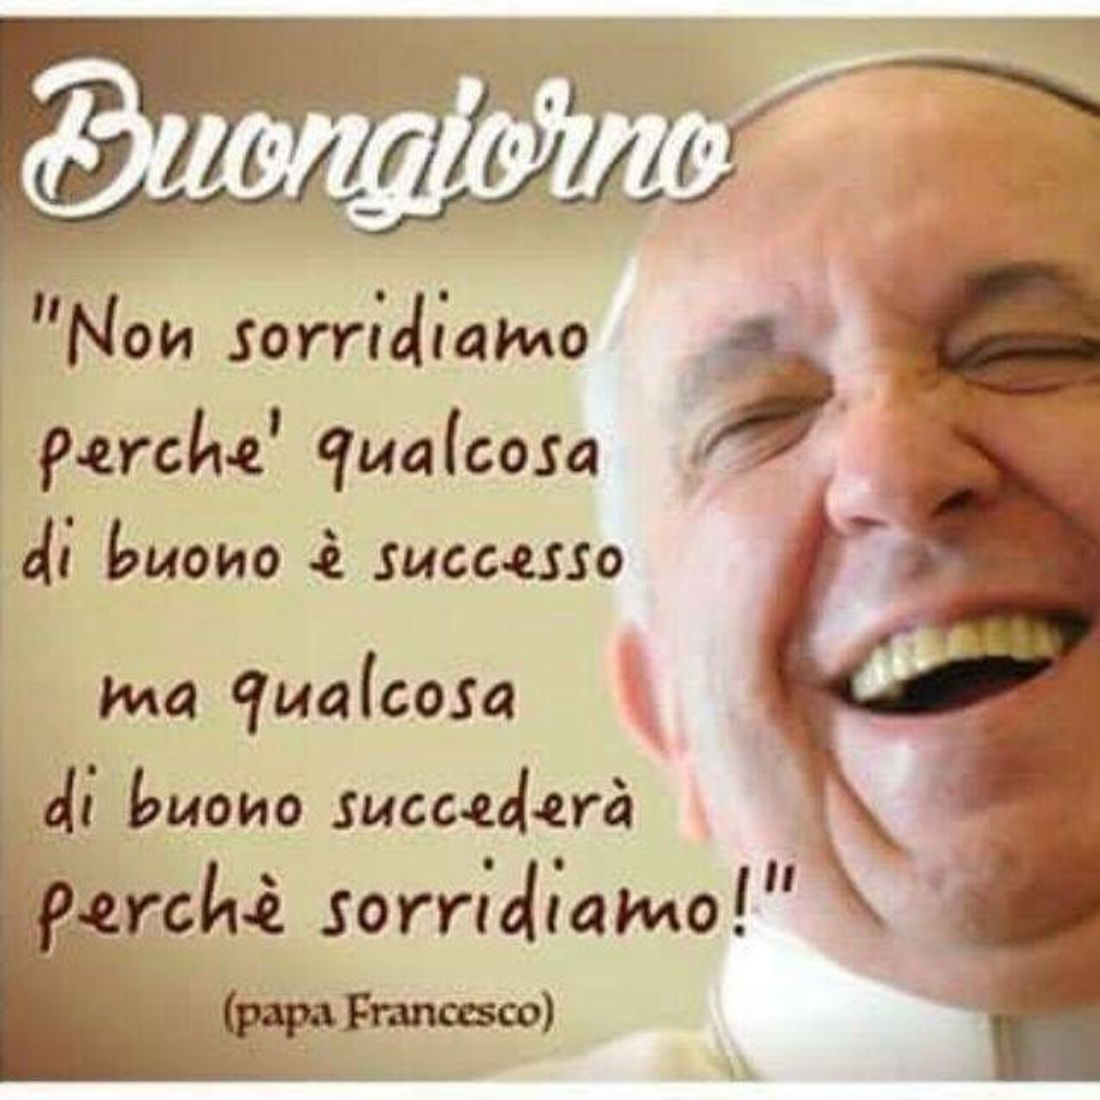 Immagini Buongiorno col Papa Francesco 2